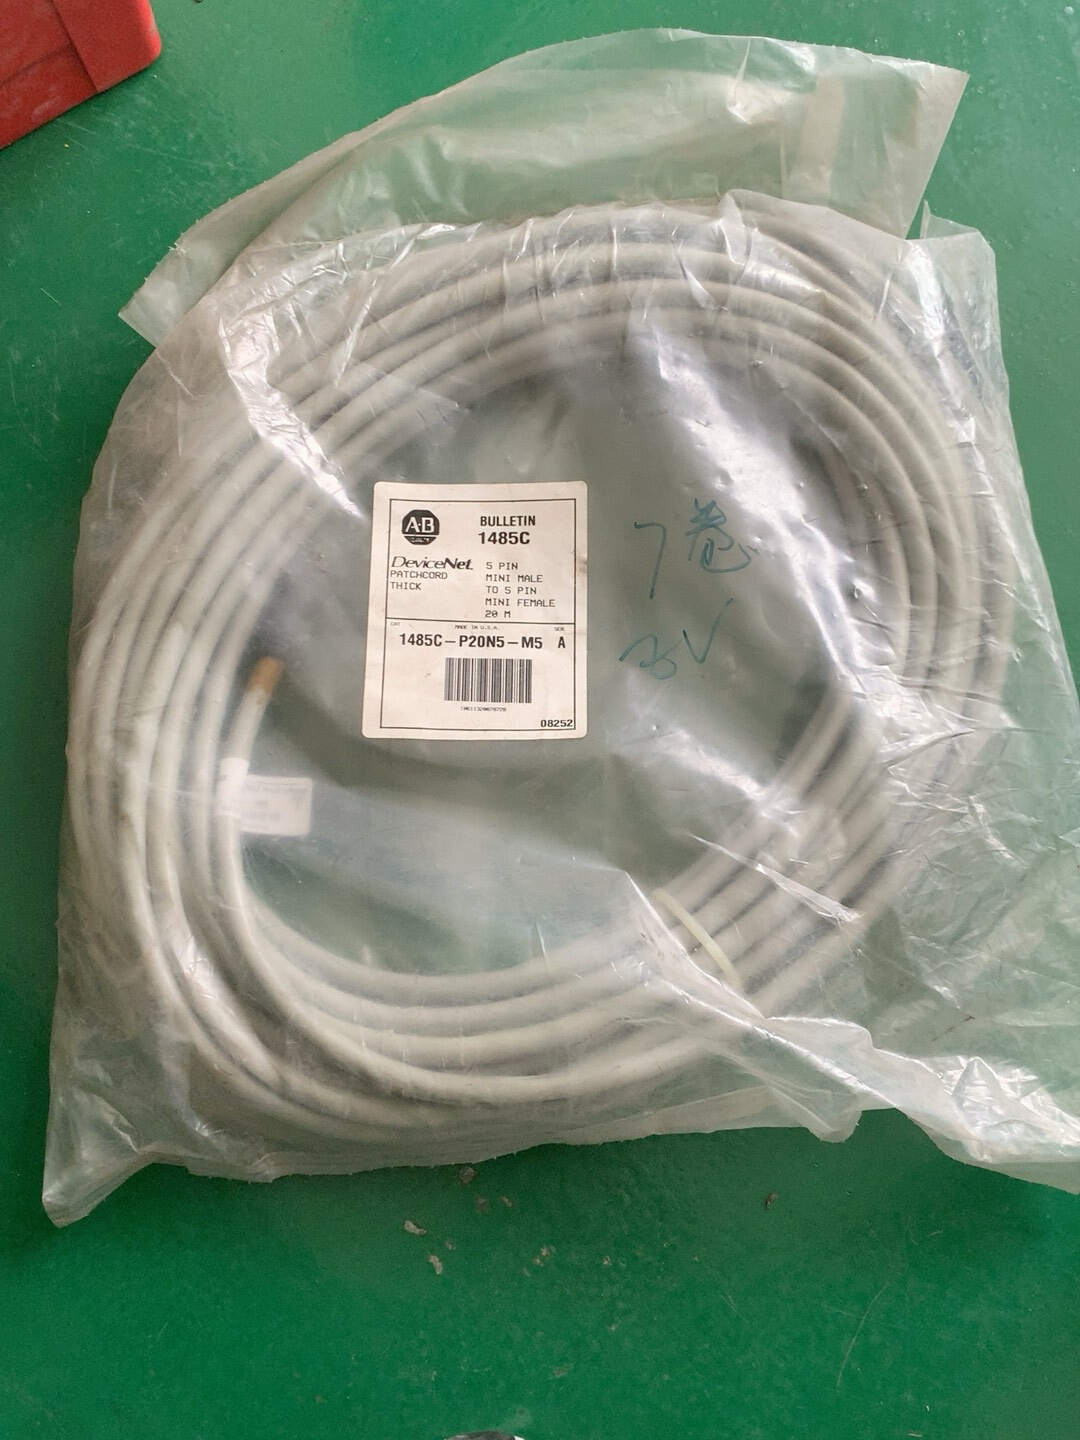 M520米 P20N5 议价AB电缆1485C